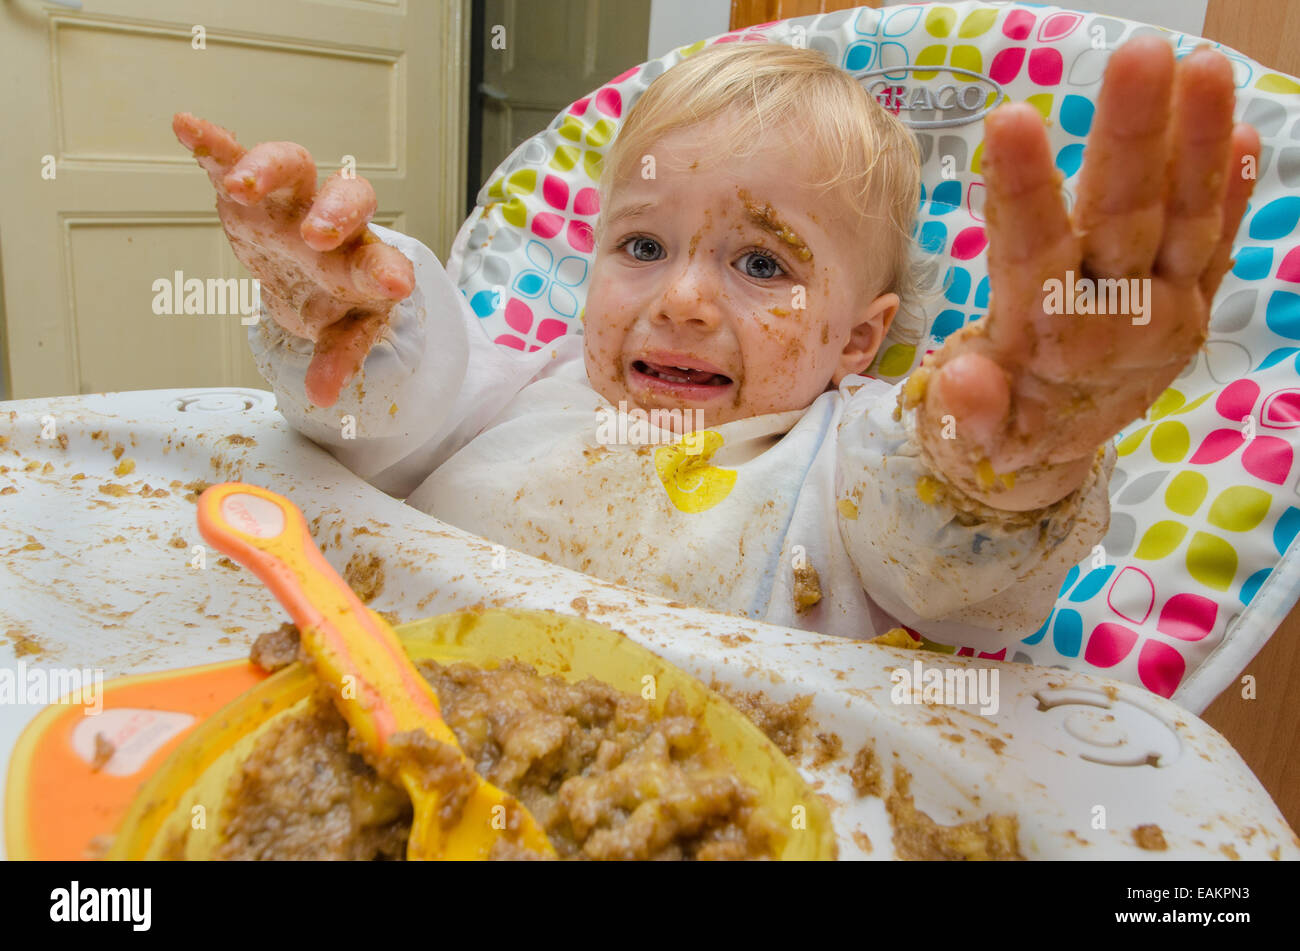 Un niño (ca. 18 meses de edad) hace una terrible lío de su comida. Foto de stock